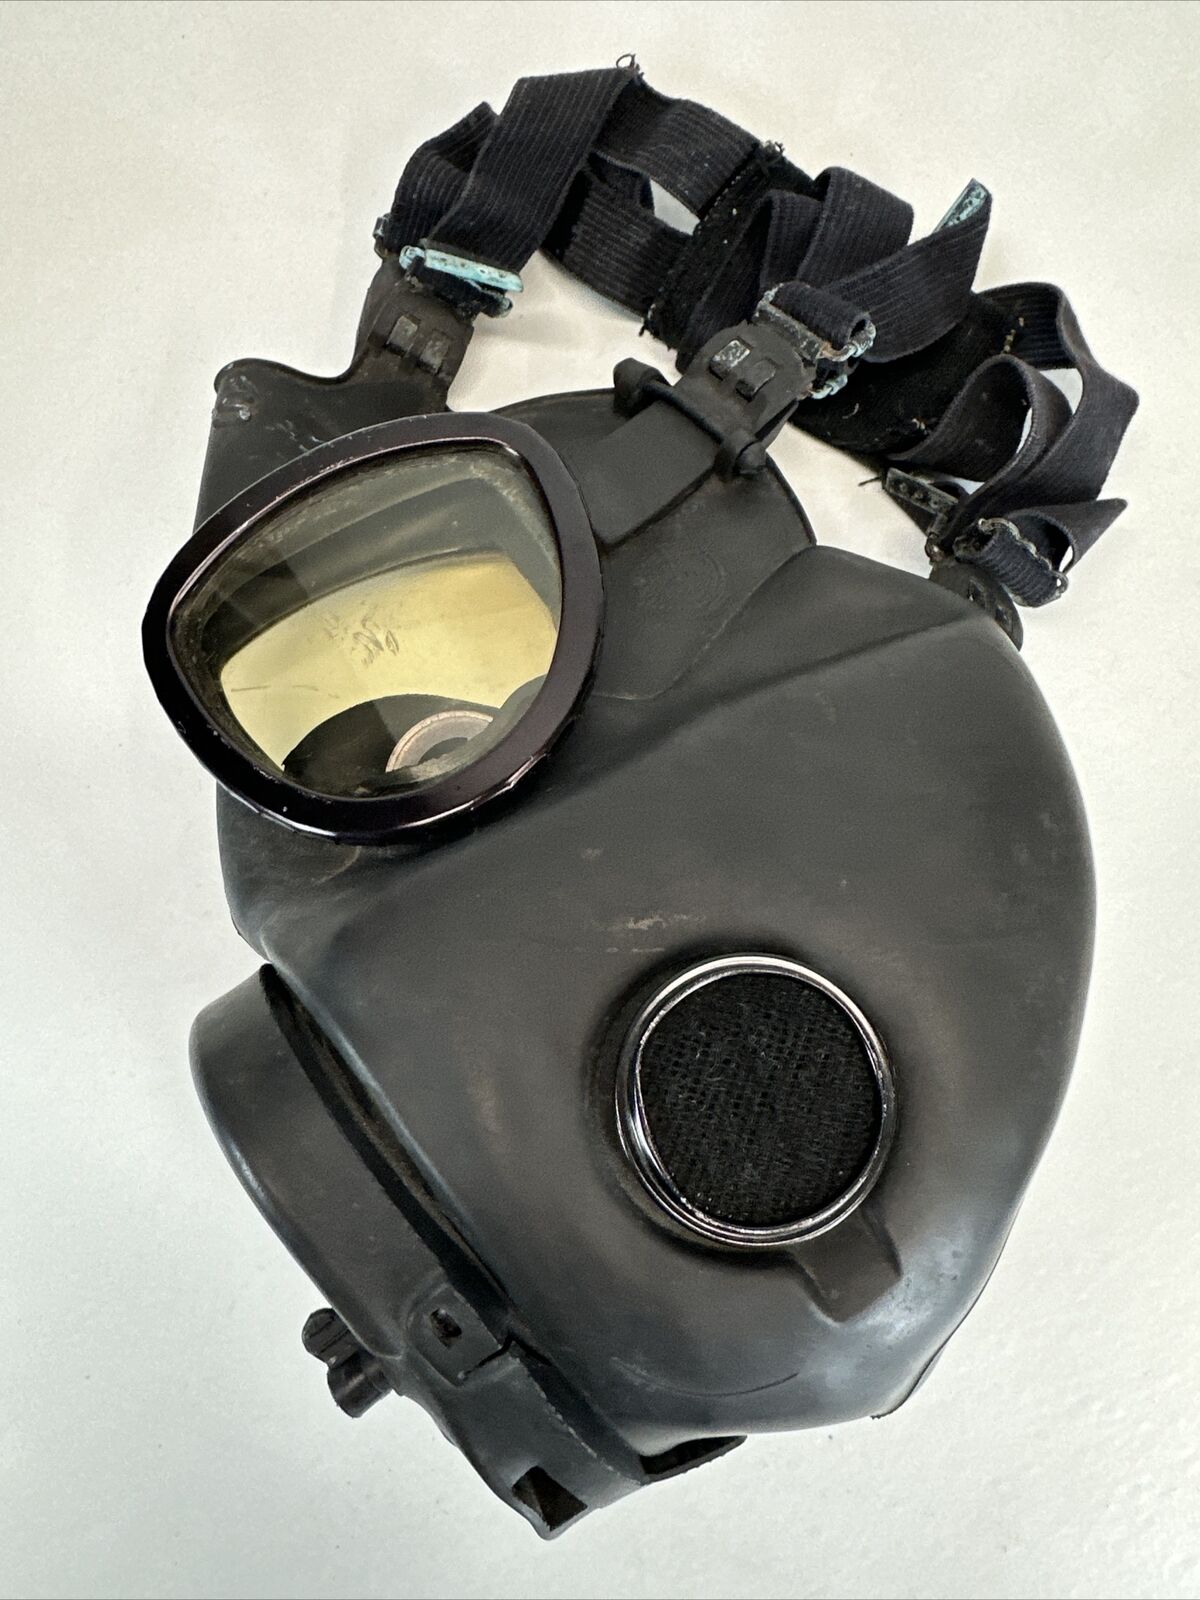 US Gas Mask US M17 C1 69 MSA 2E 8 Chemical Biological Black Vintage